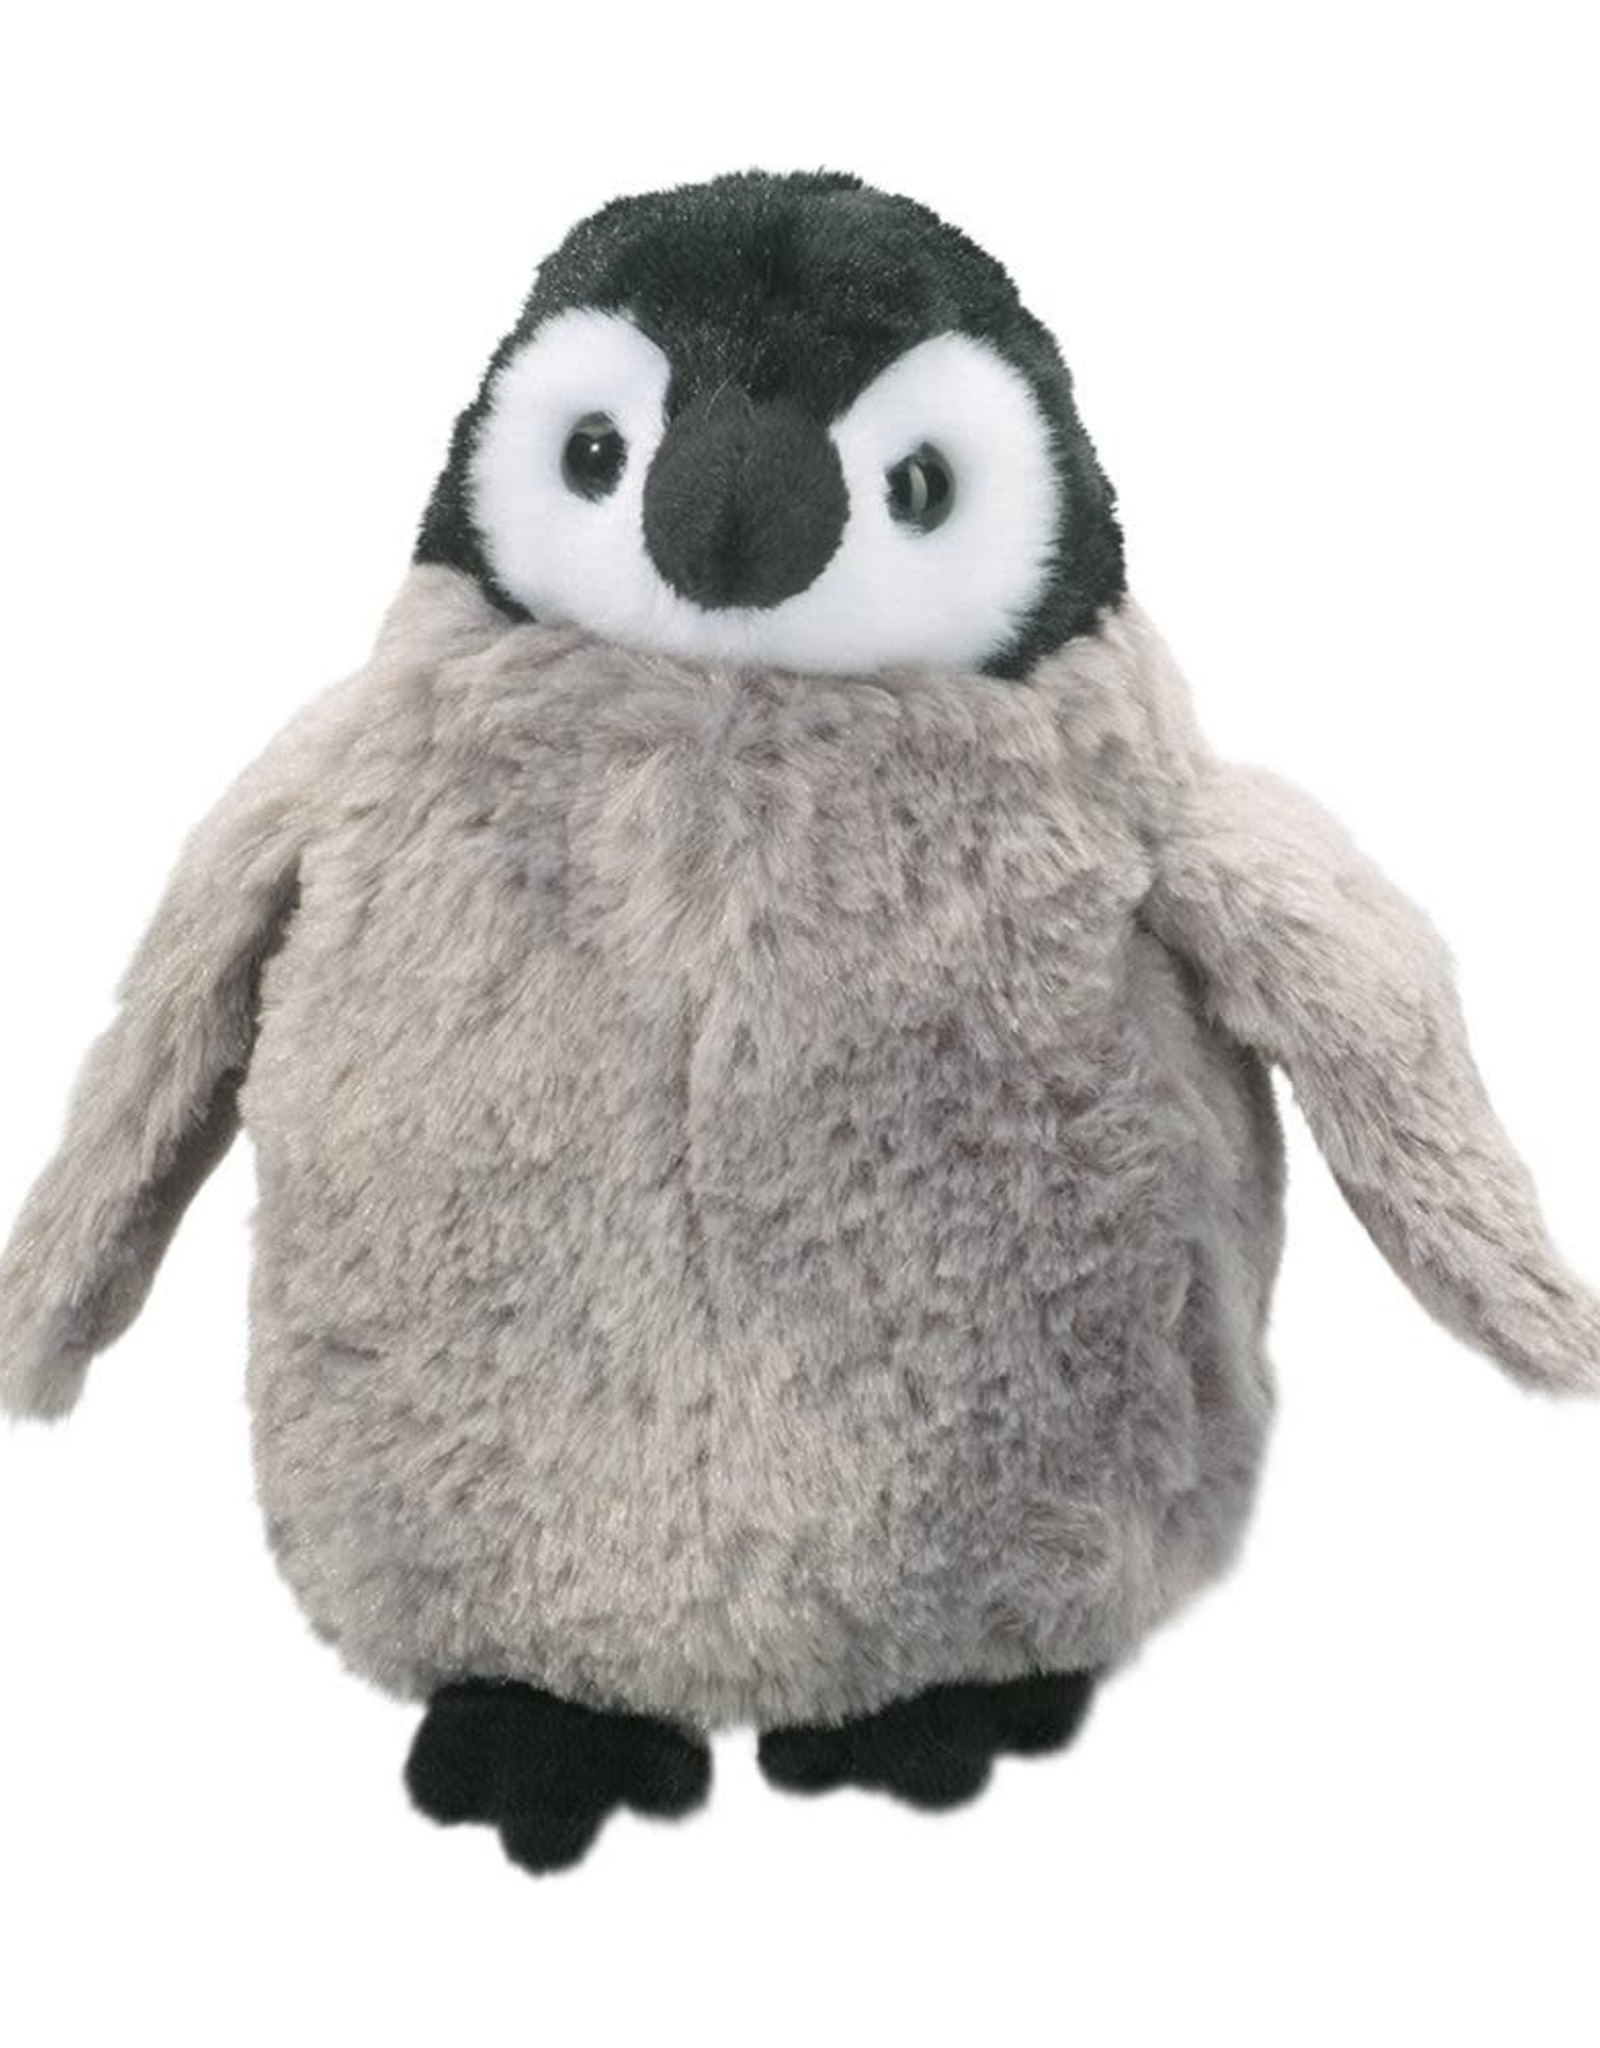 Douglas Co Inc Cuddles Penguin Chick Plush